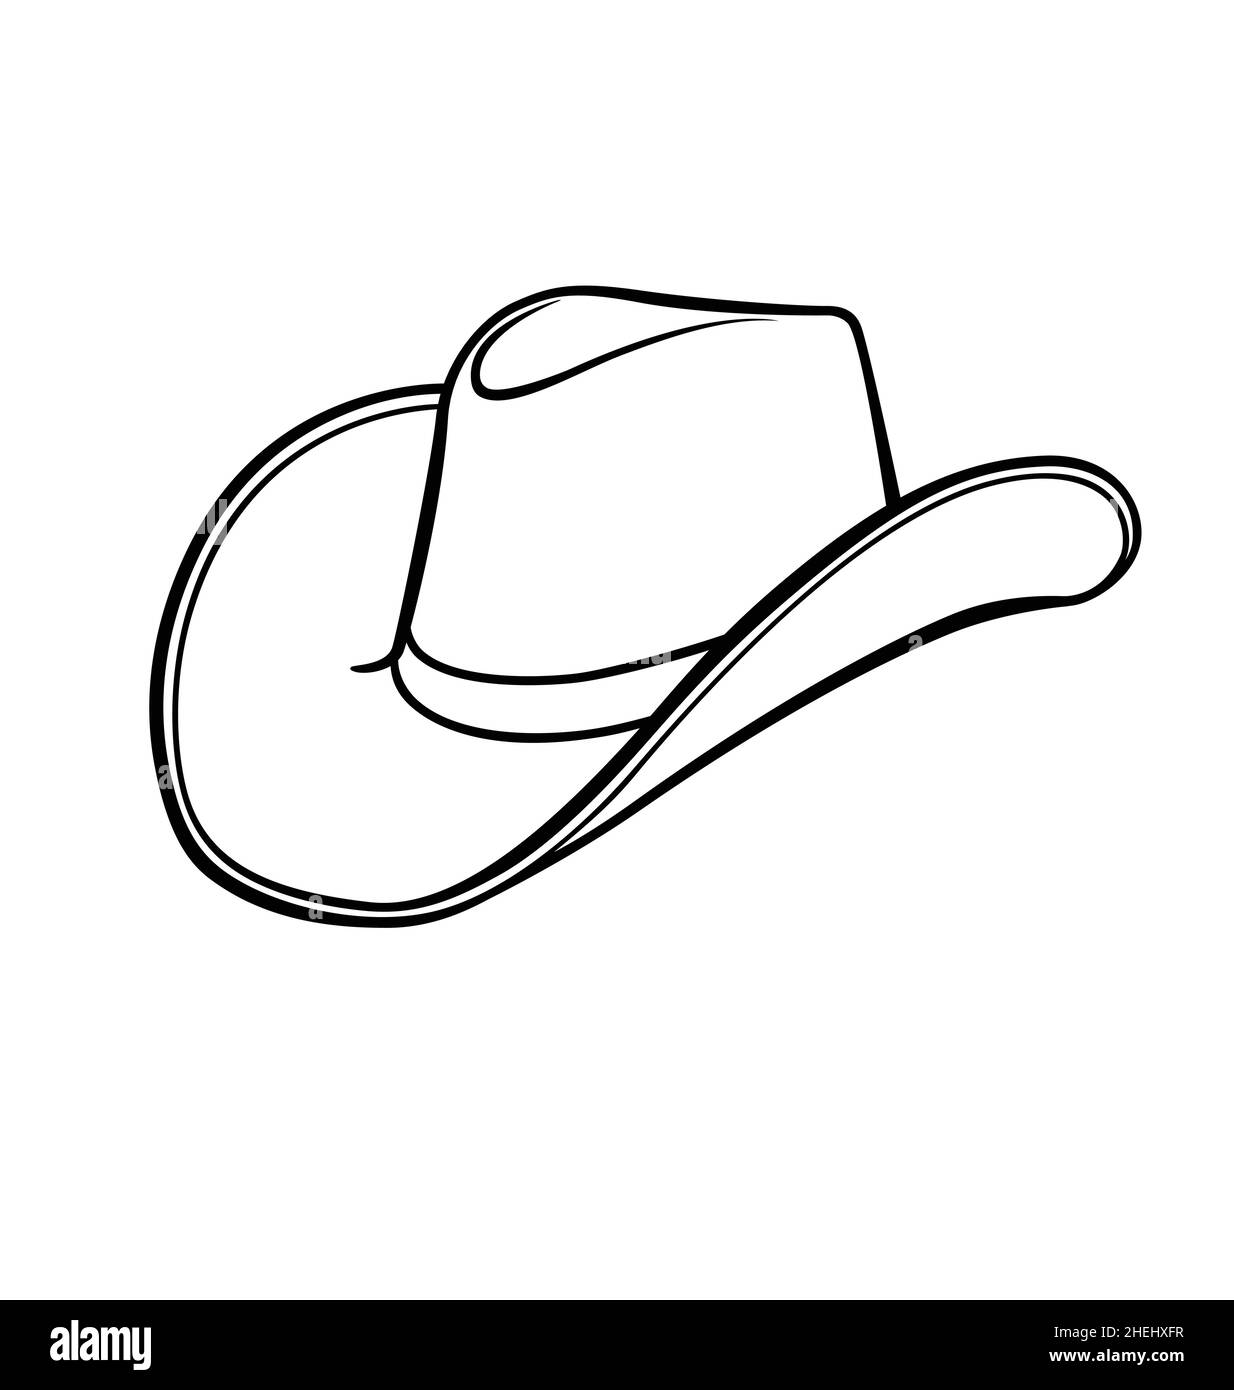 Dessin animé Cowboy chapeau stetson ligne noire dessin dessin dessin  vectoriel de dessin isolé sur fond blanc Image Vectorielle Stock - Alamy